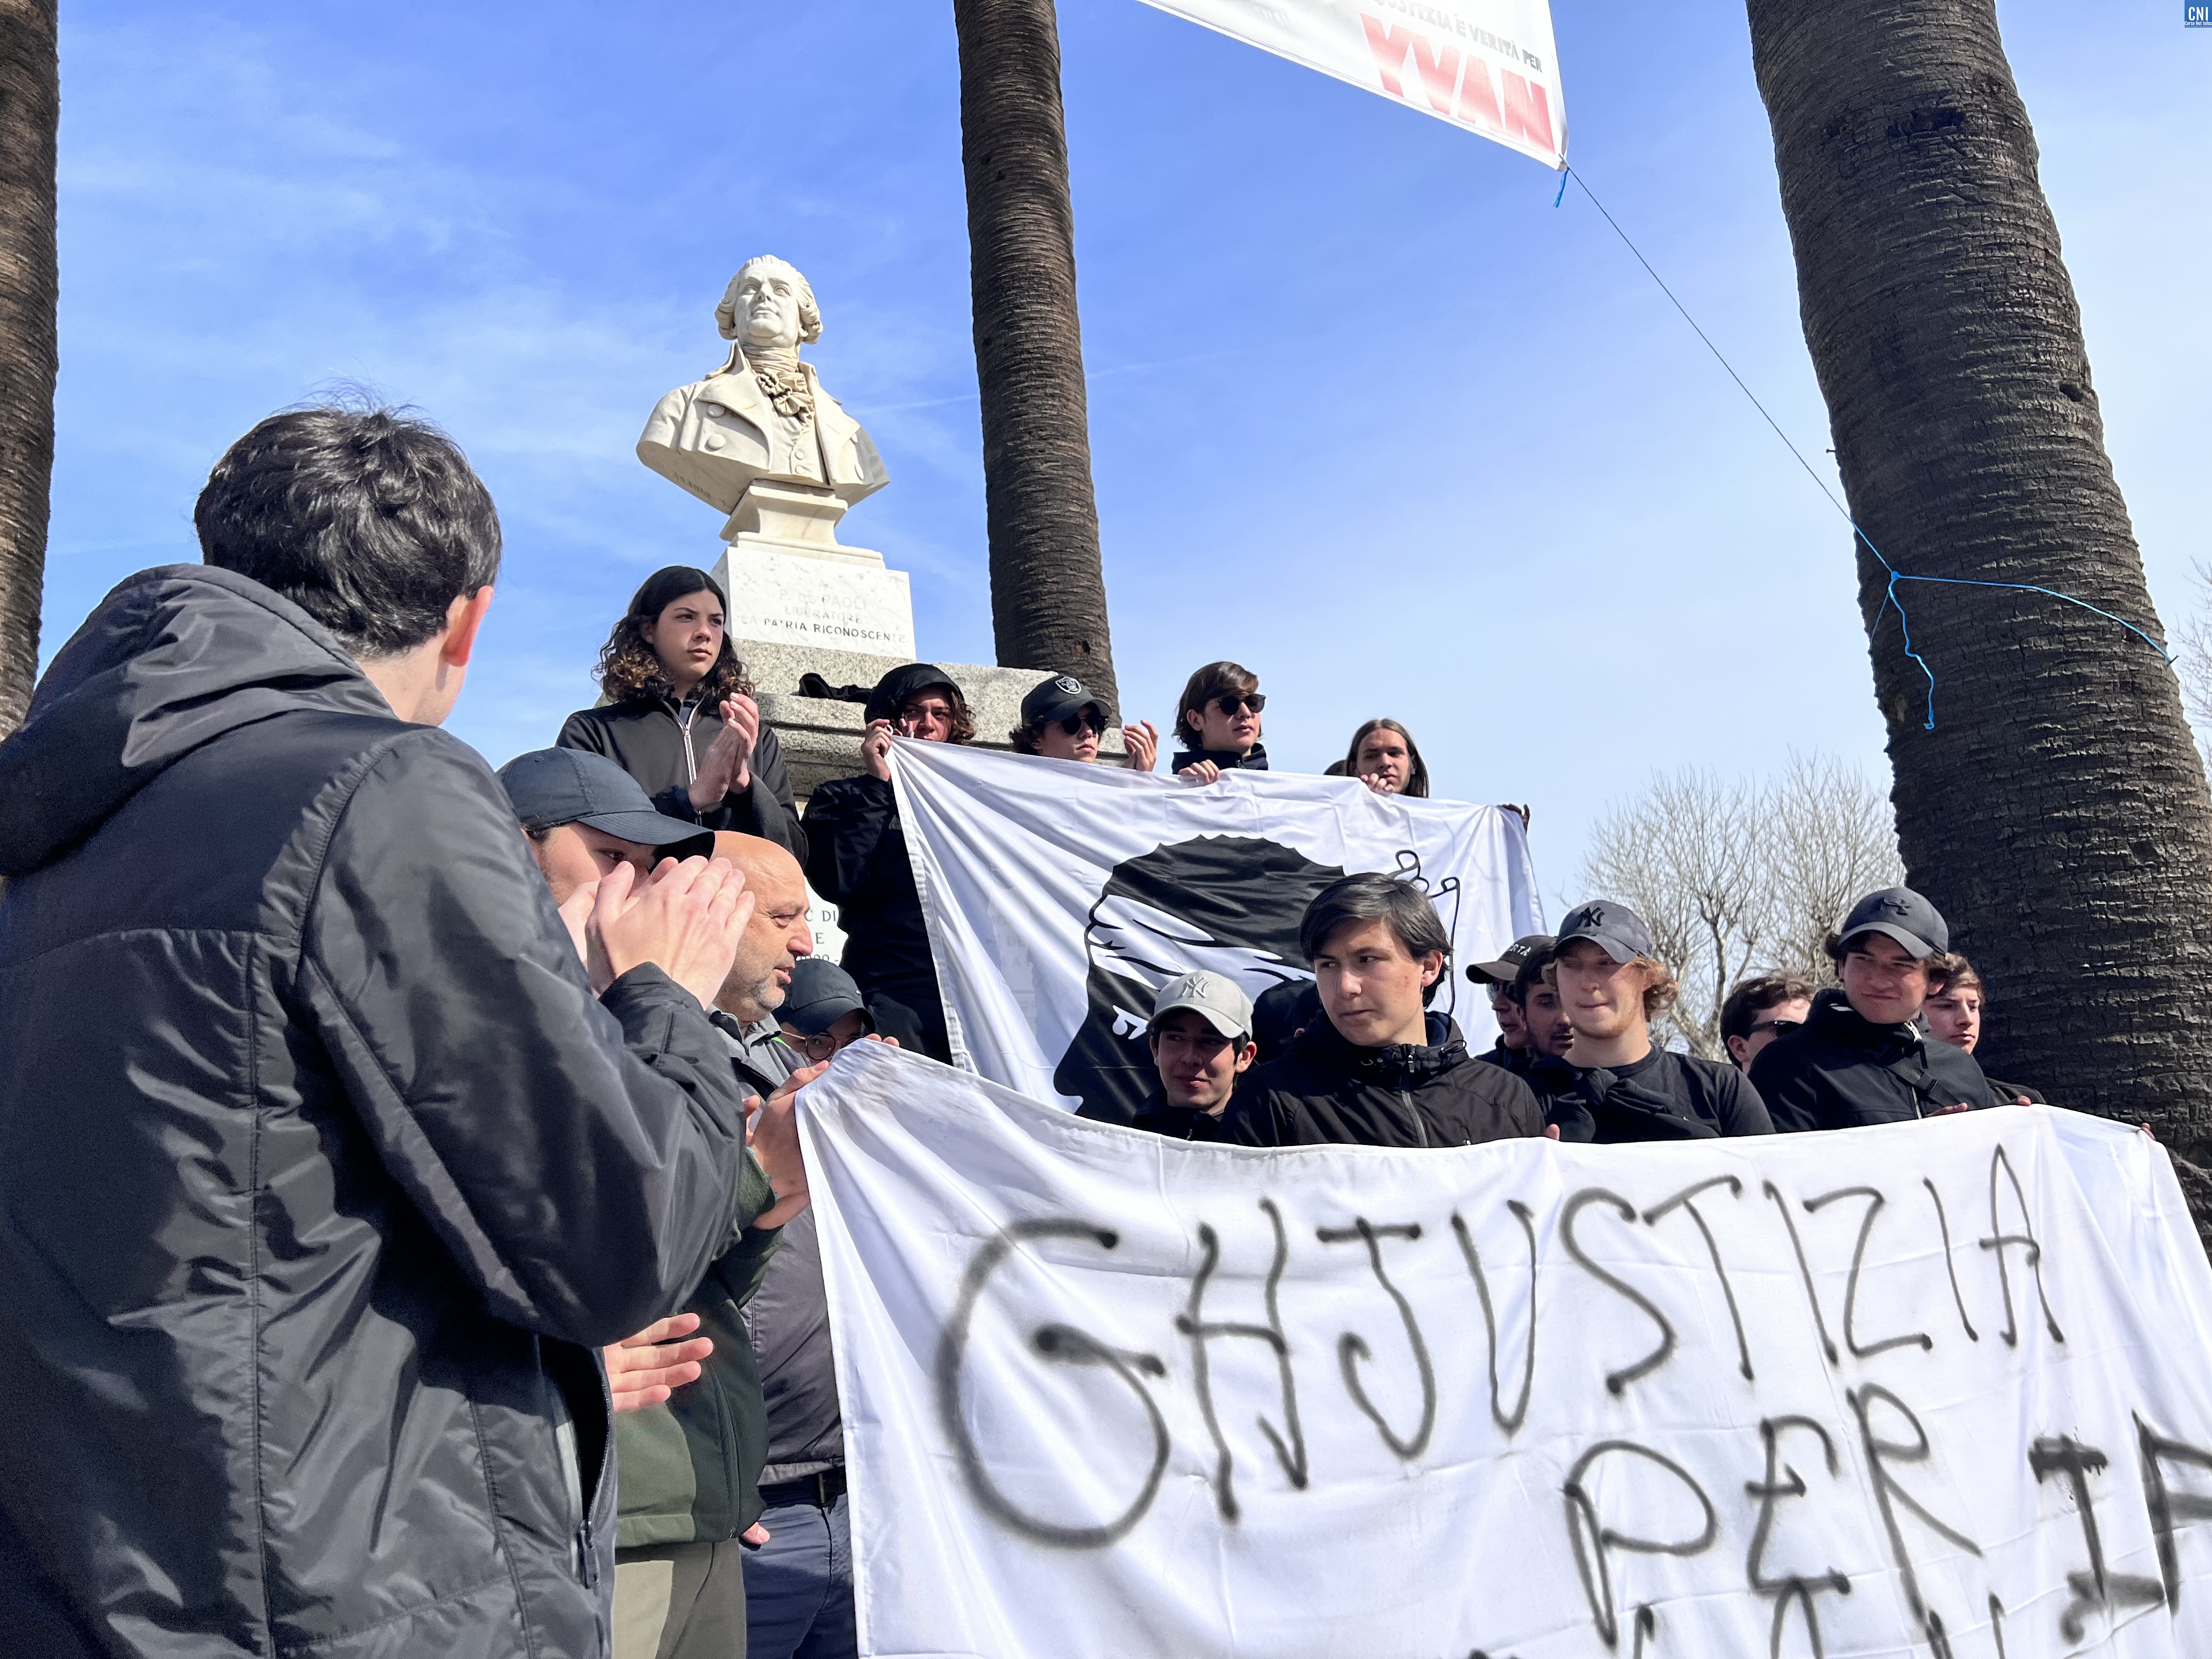 À Lisula les manifestants ont rencontré les élus  : "vous, les jeunes, vous nous avez rendu notre dignité"